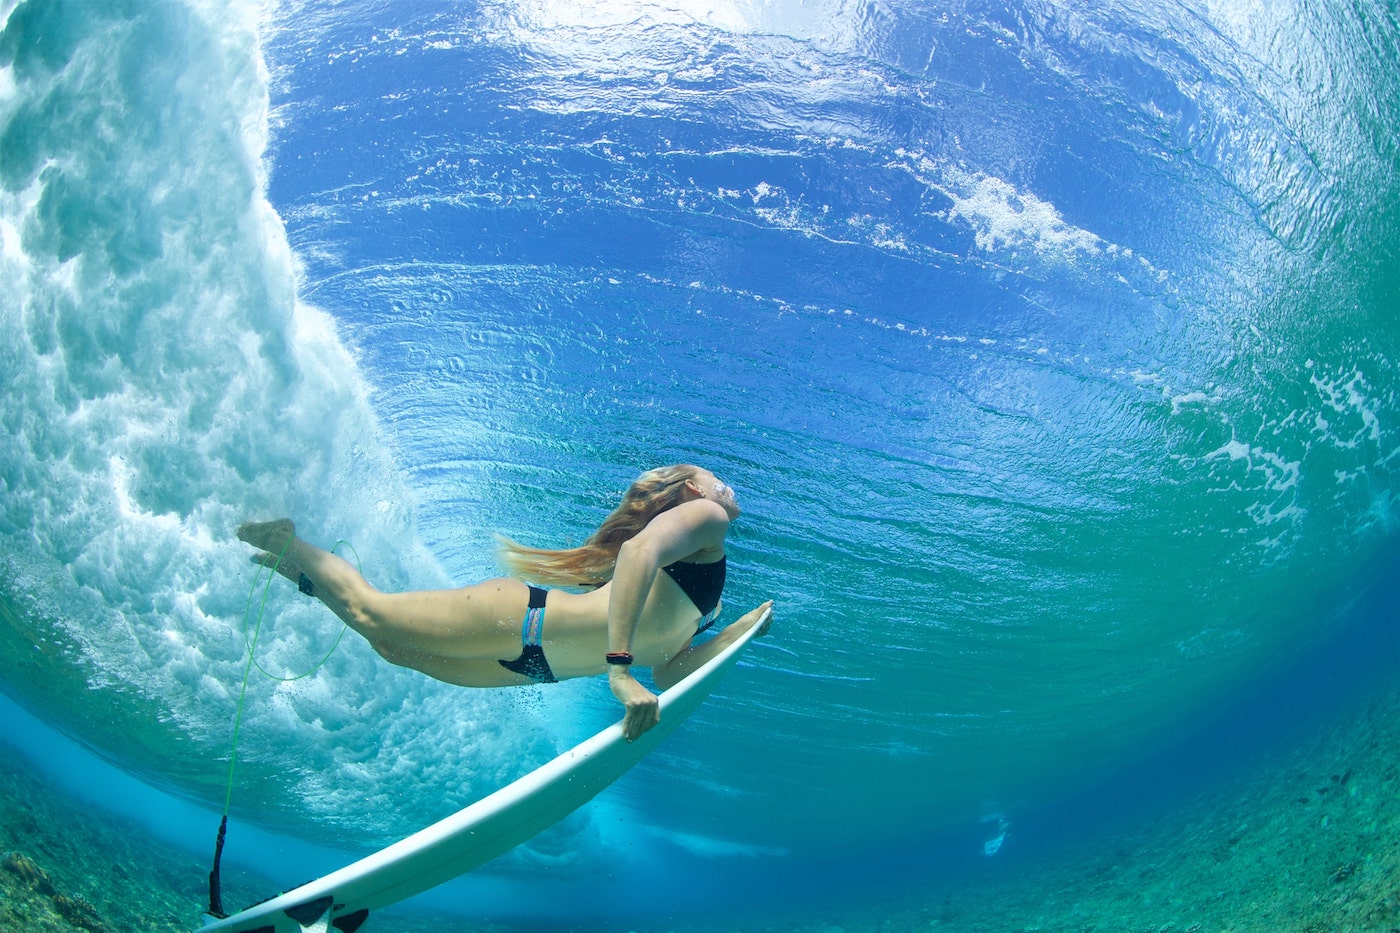 surfer duck dives under wave